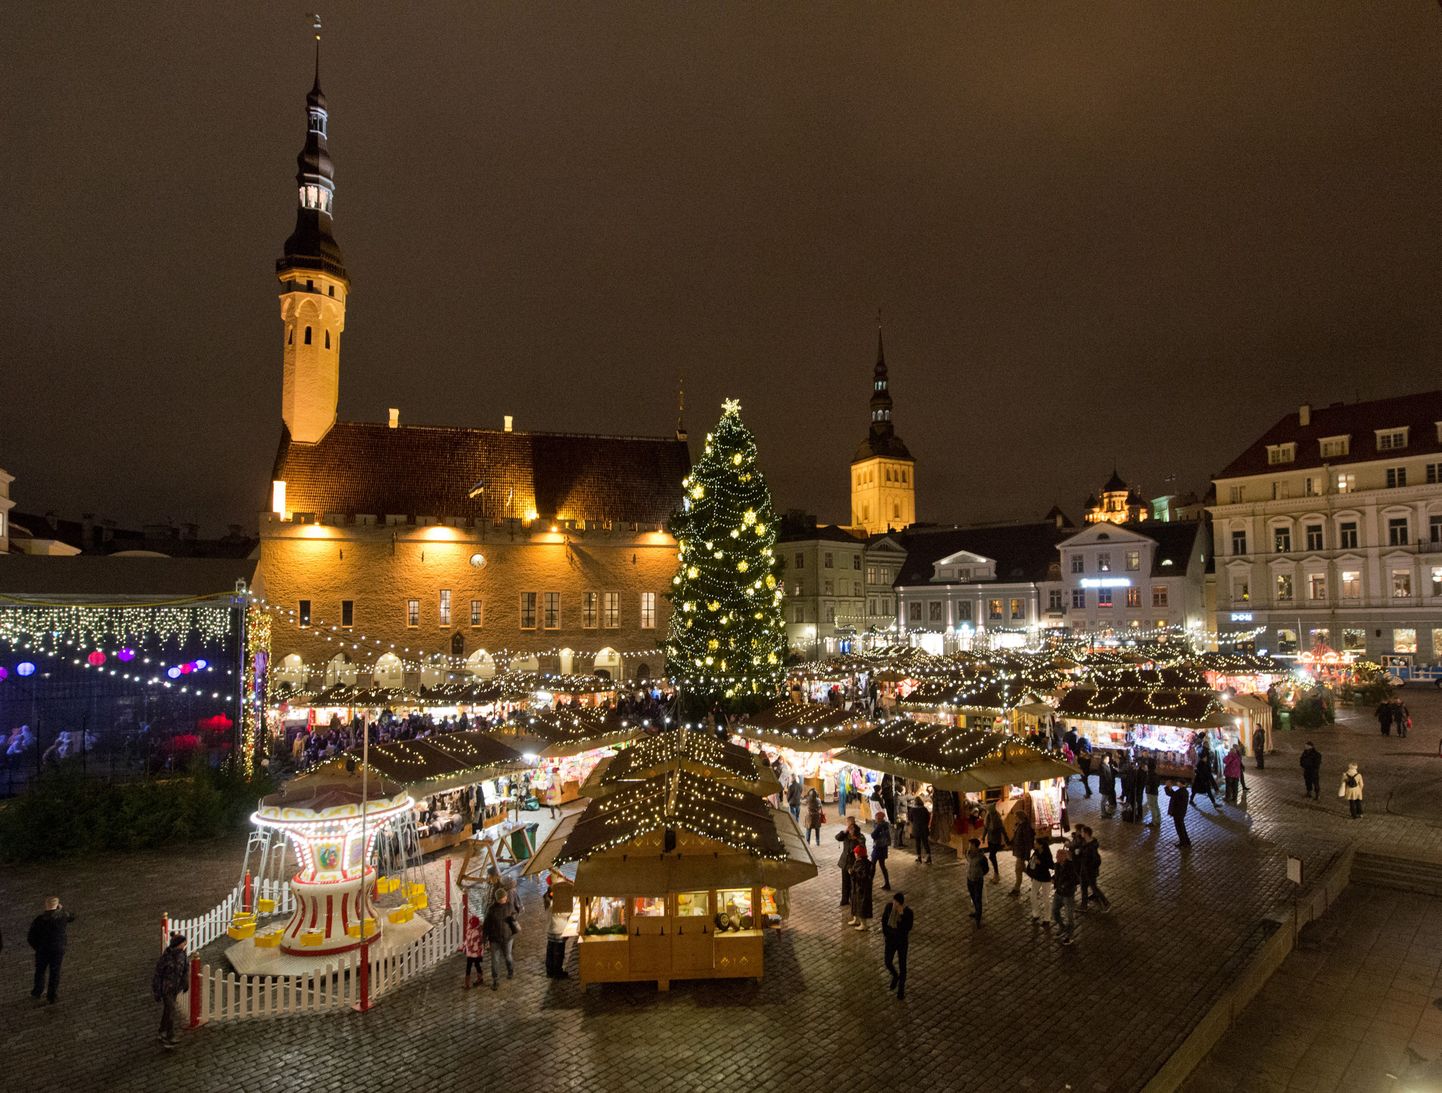 Tallinna jõuluturg on Raekoja platsil avatud 8. jaanuarini ja seal leiab põnevat tegevust igas vanuses huviline. Muidugi on kohal jõuluvana koos põhjapõtradega ning nädalalõppudel saab nautida kultuuriprogrammi.